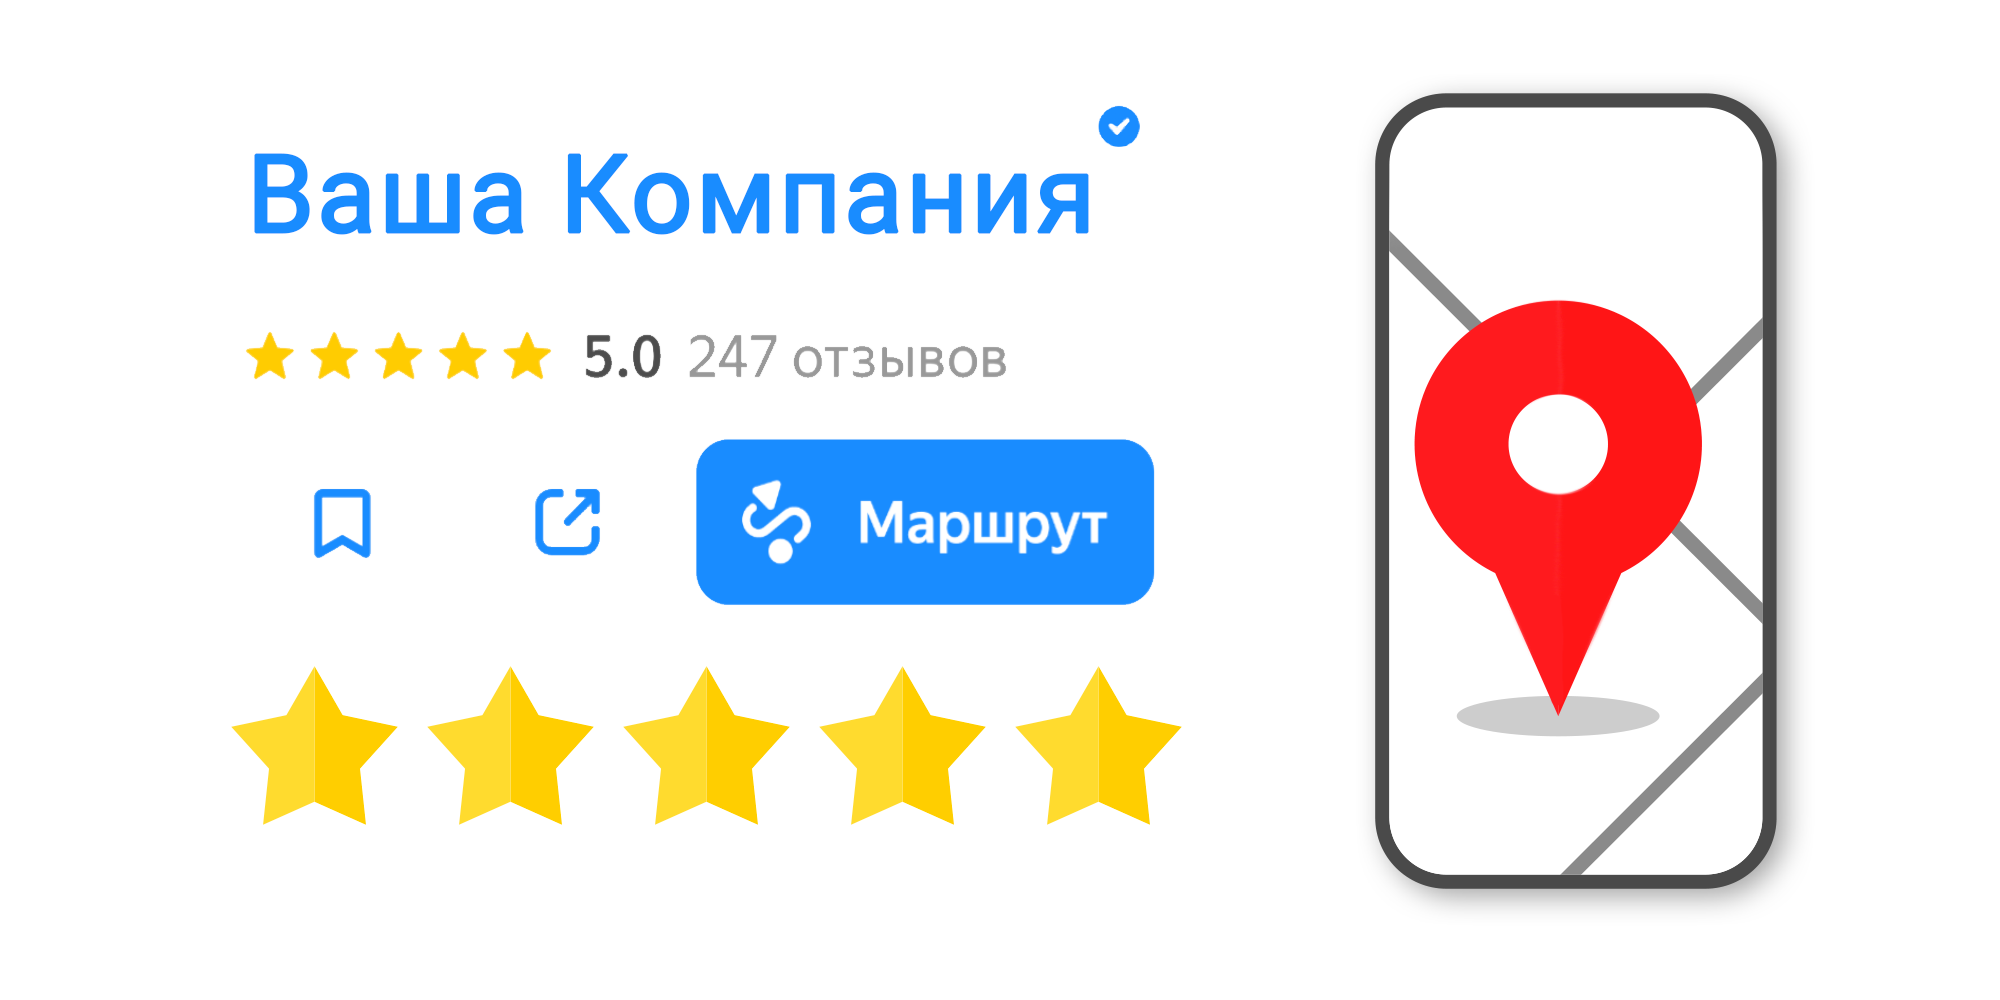 Размещение отзывов на Яндекс.Картах